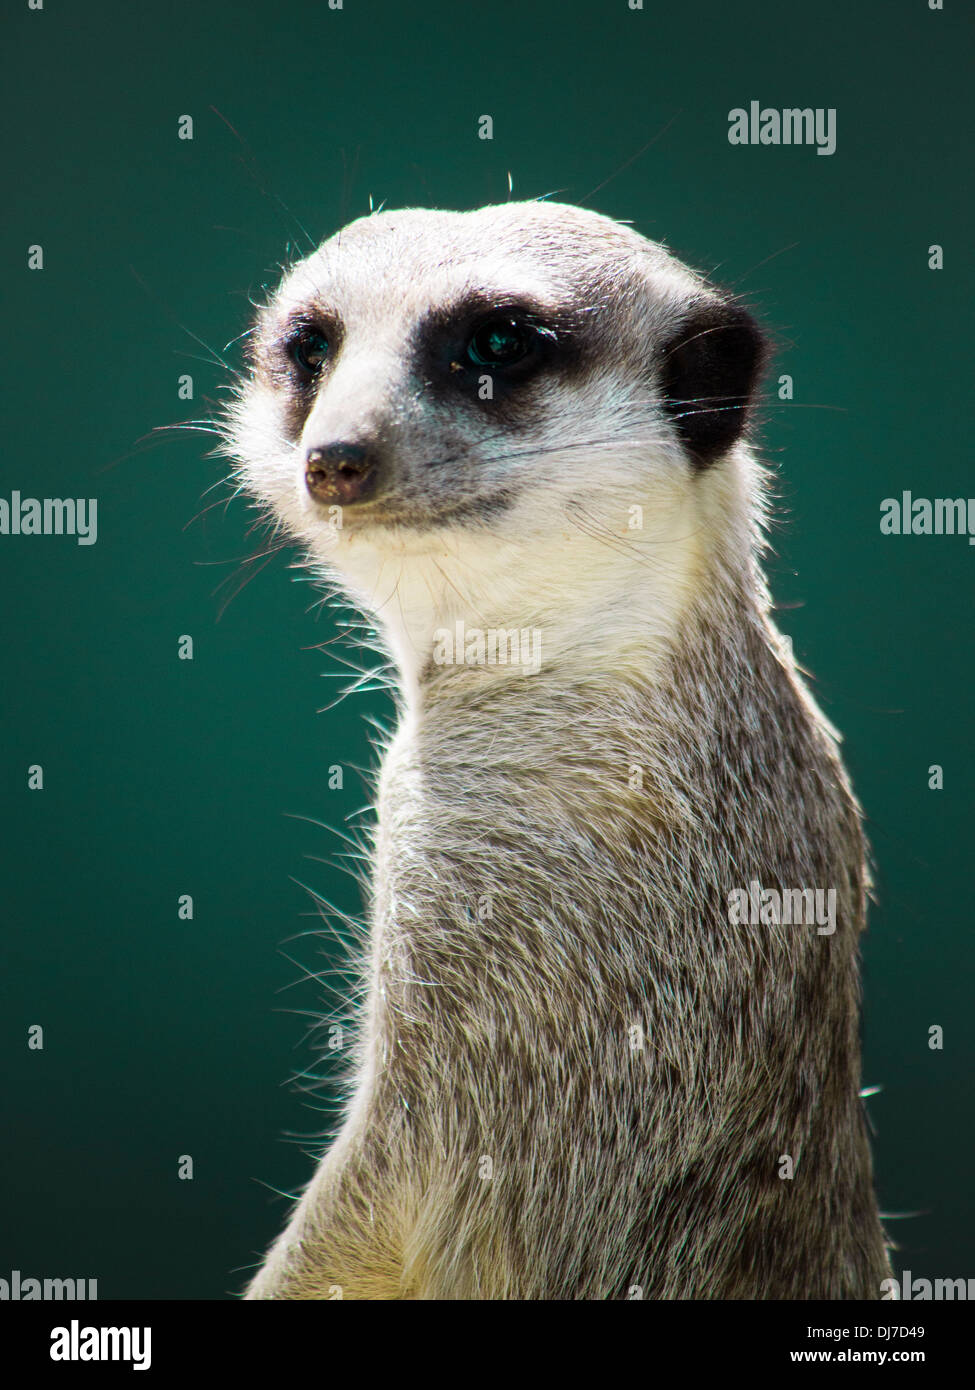 Immagine che mostra un singolo meerkat guardia, isolata contro uno sfondo verde. Foto Stock